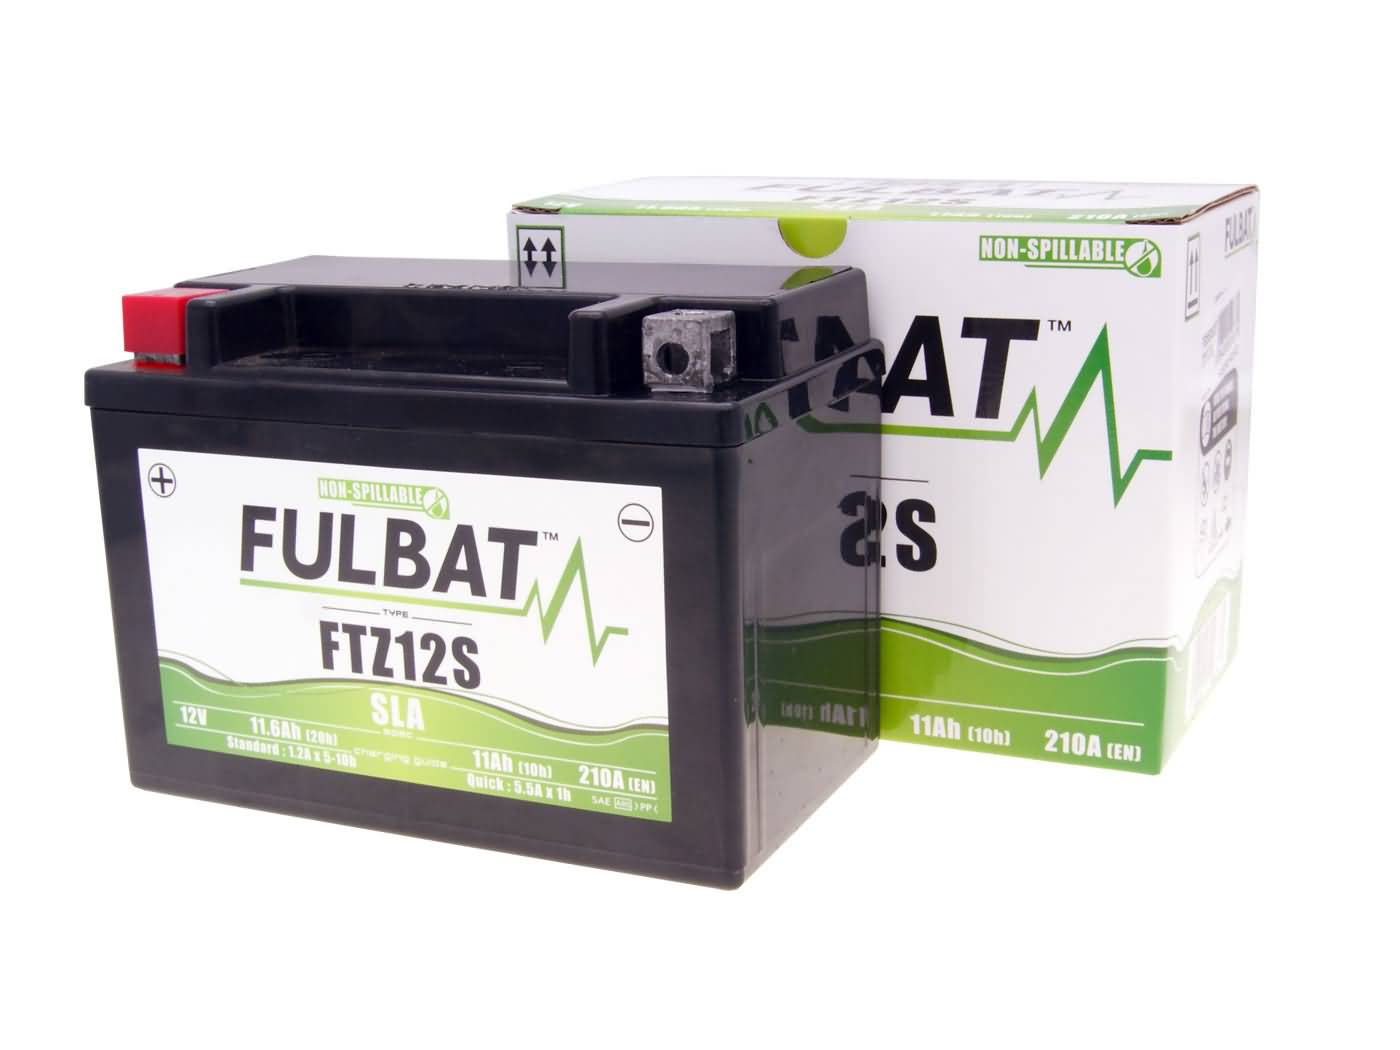 Fulbat FTZ12S Batterie